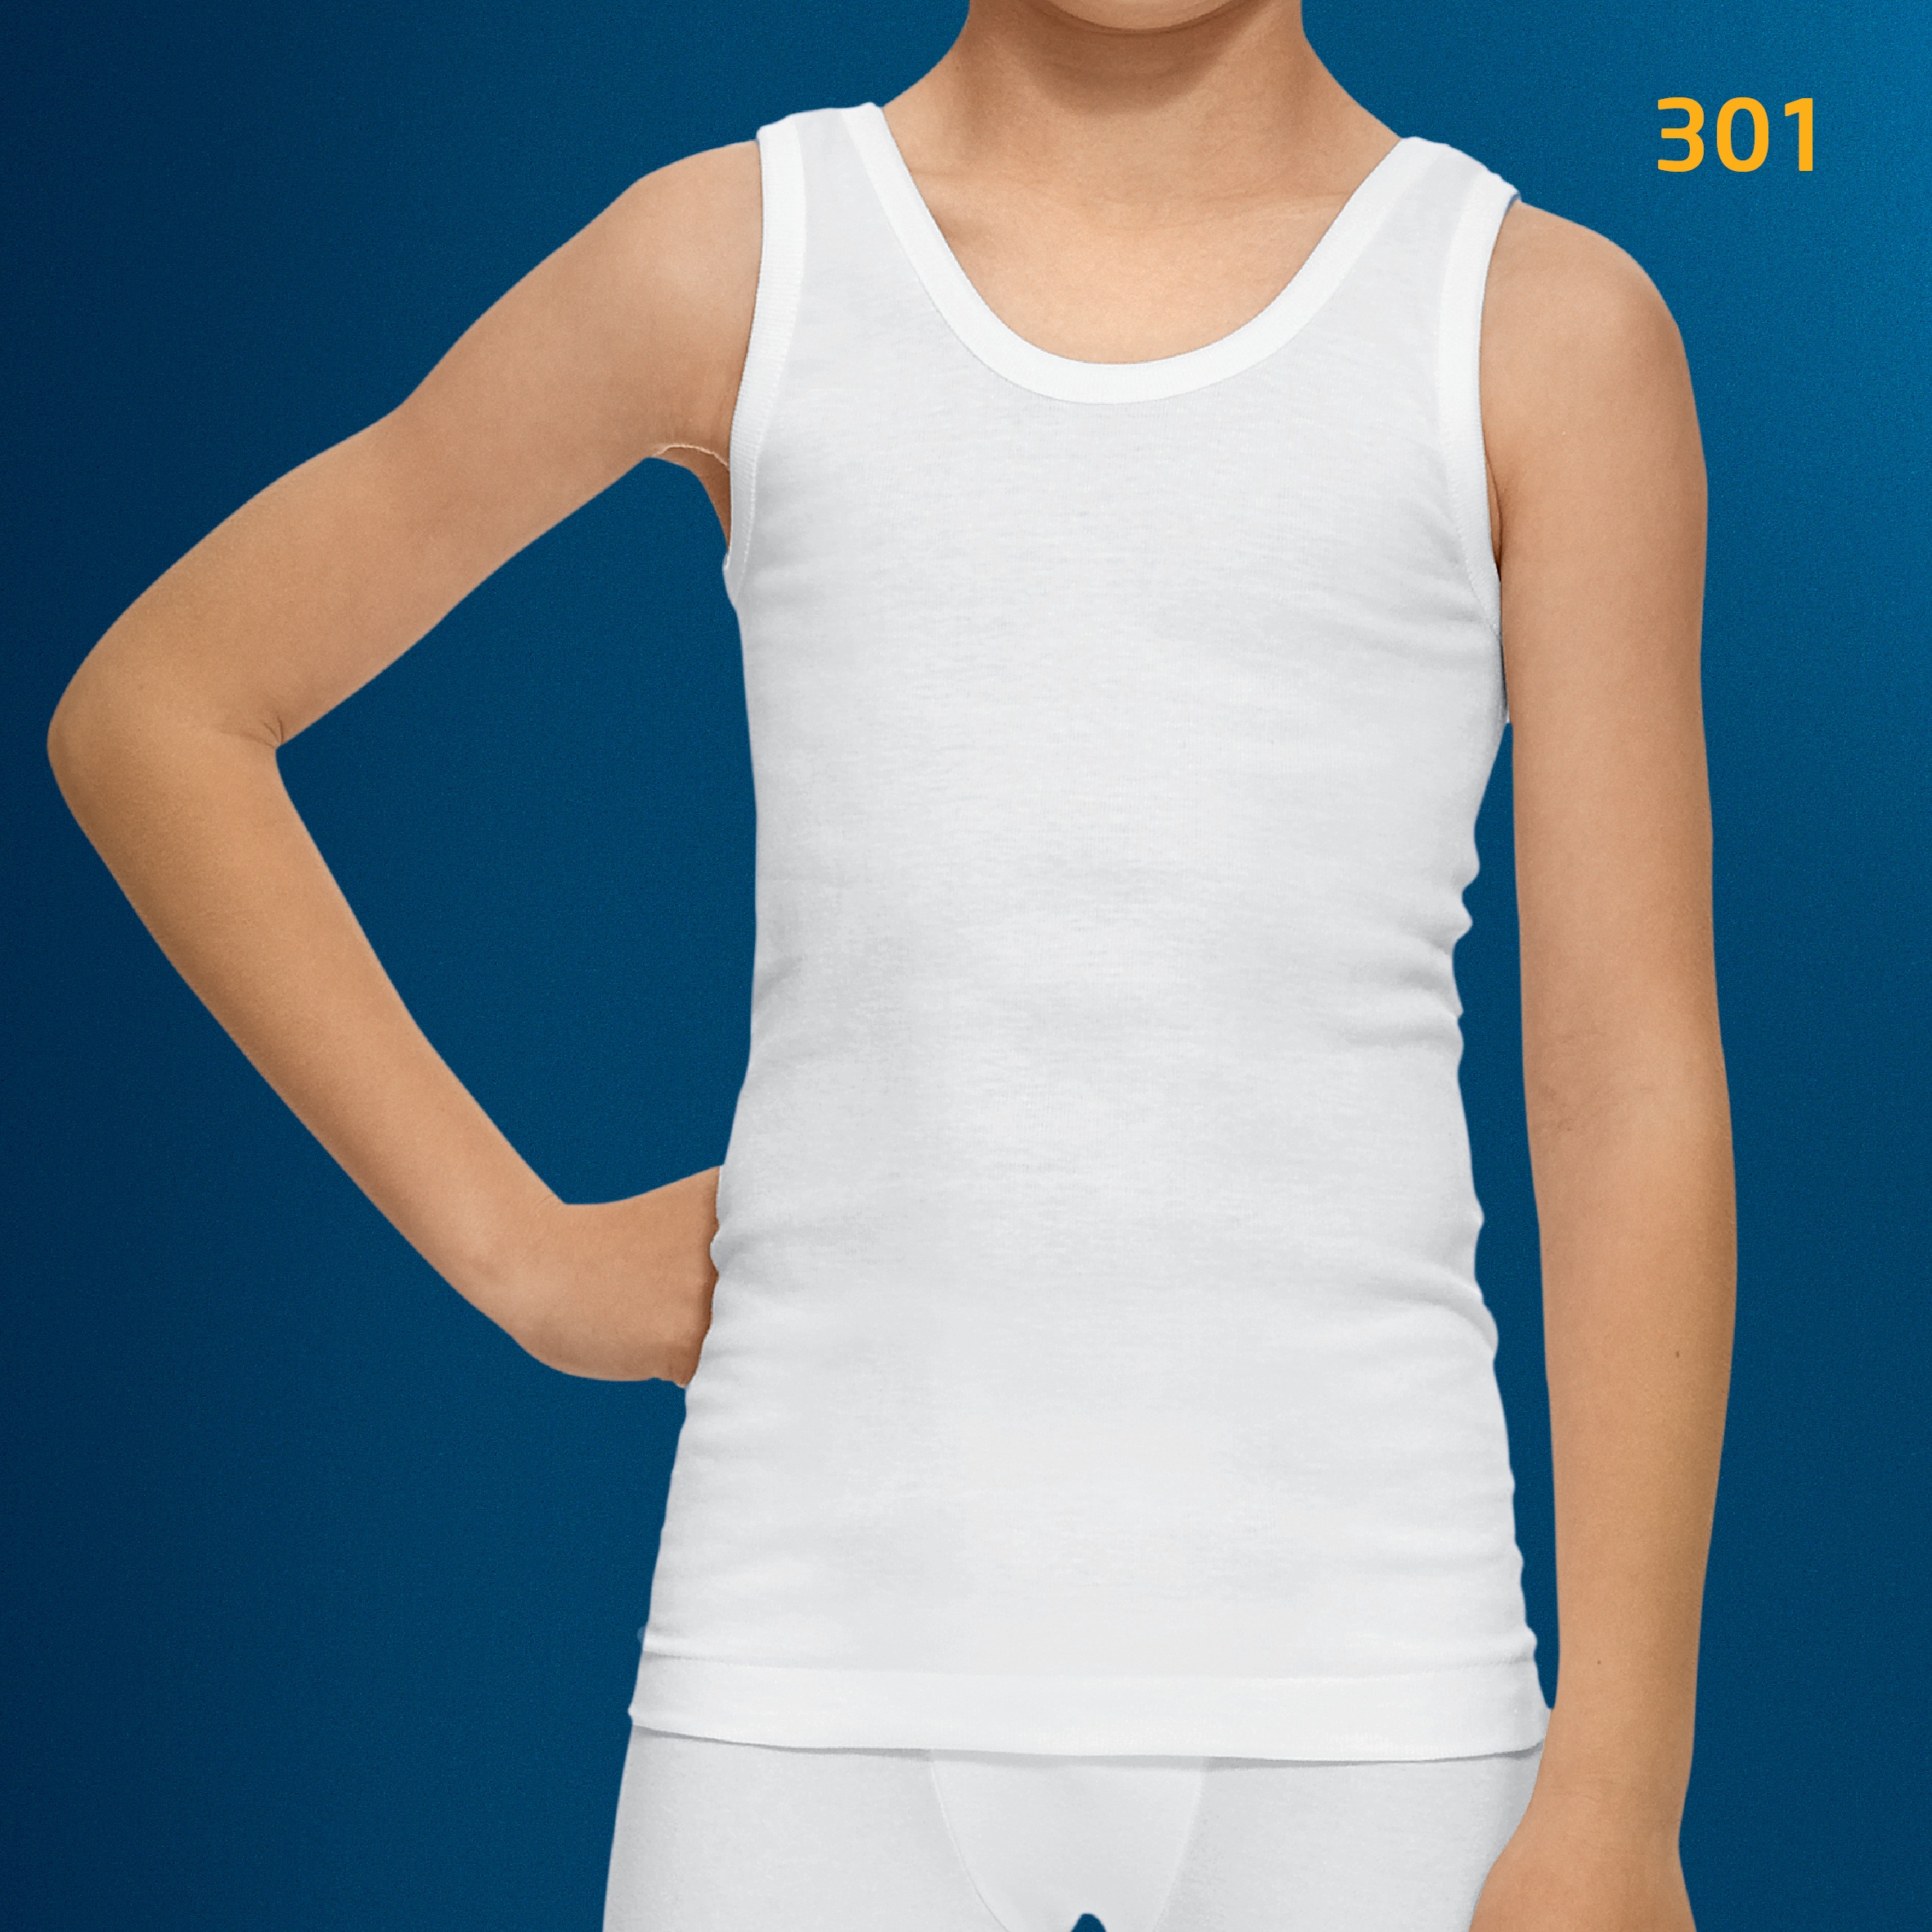 Camiseta niña tirantes DIACAR blanca